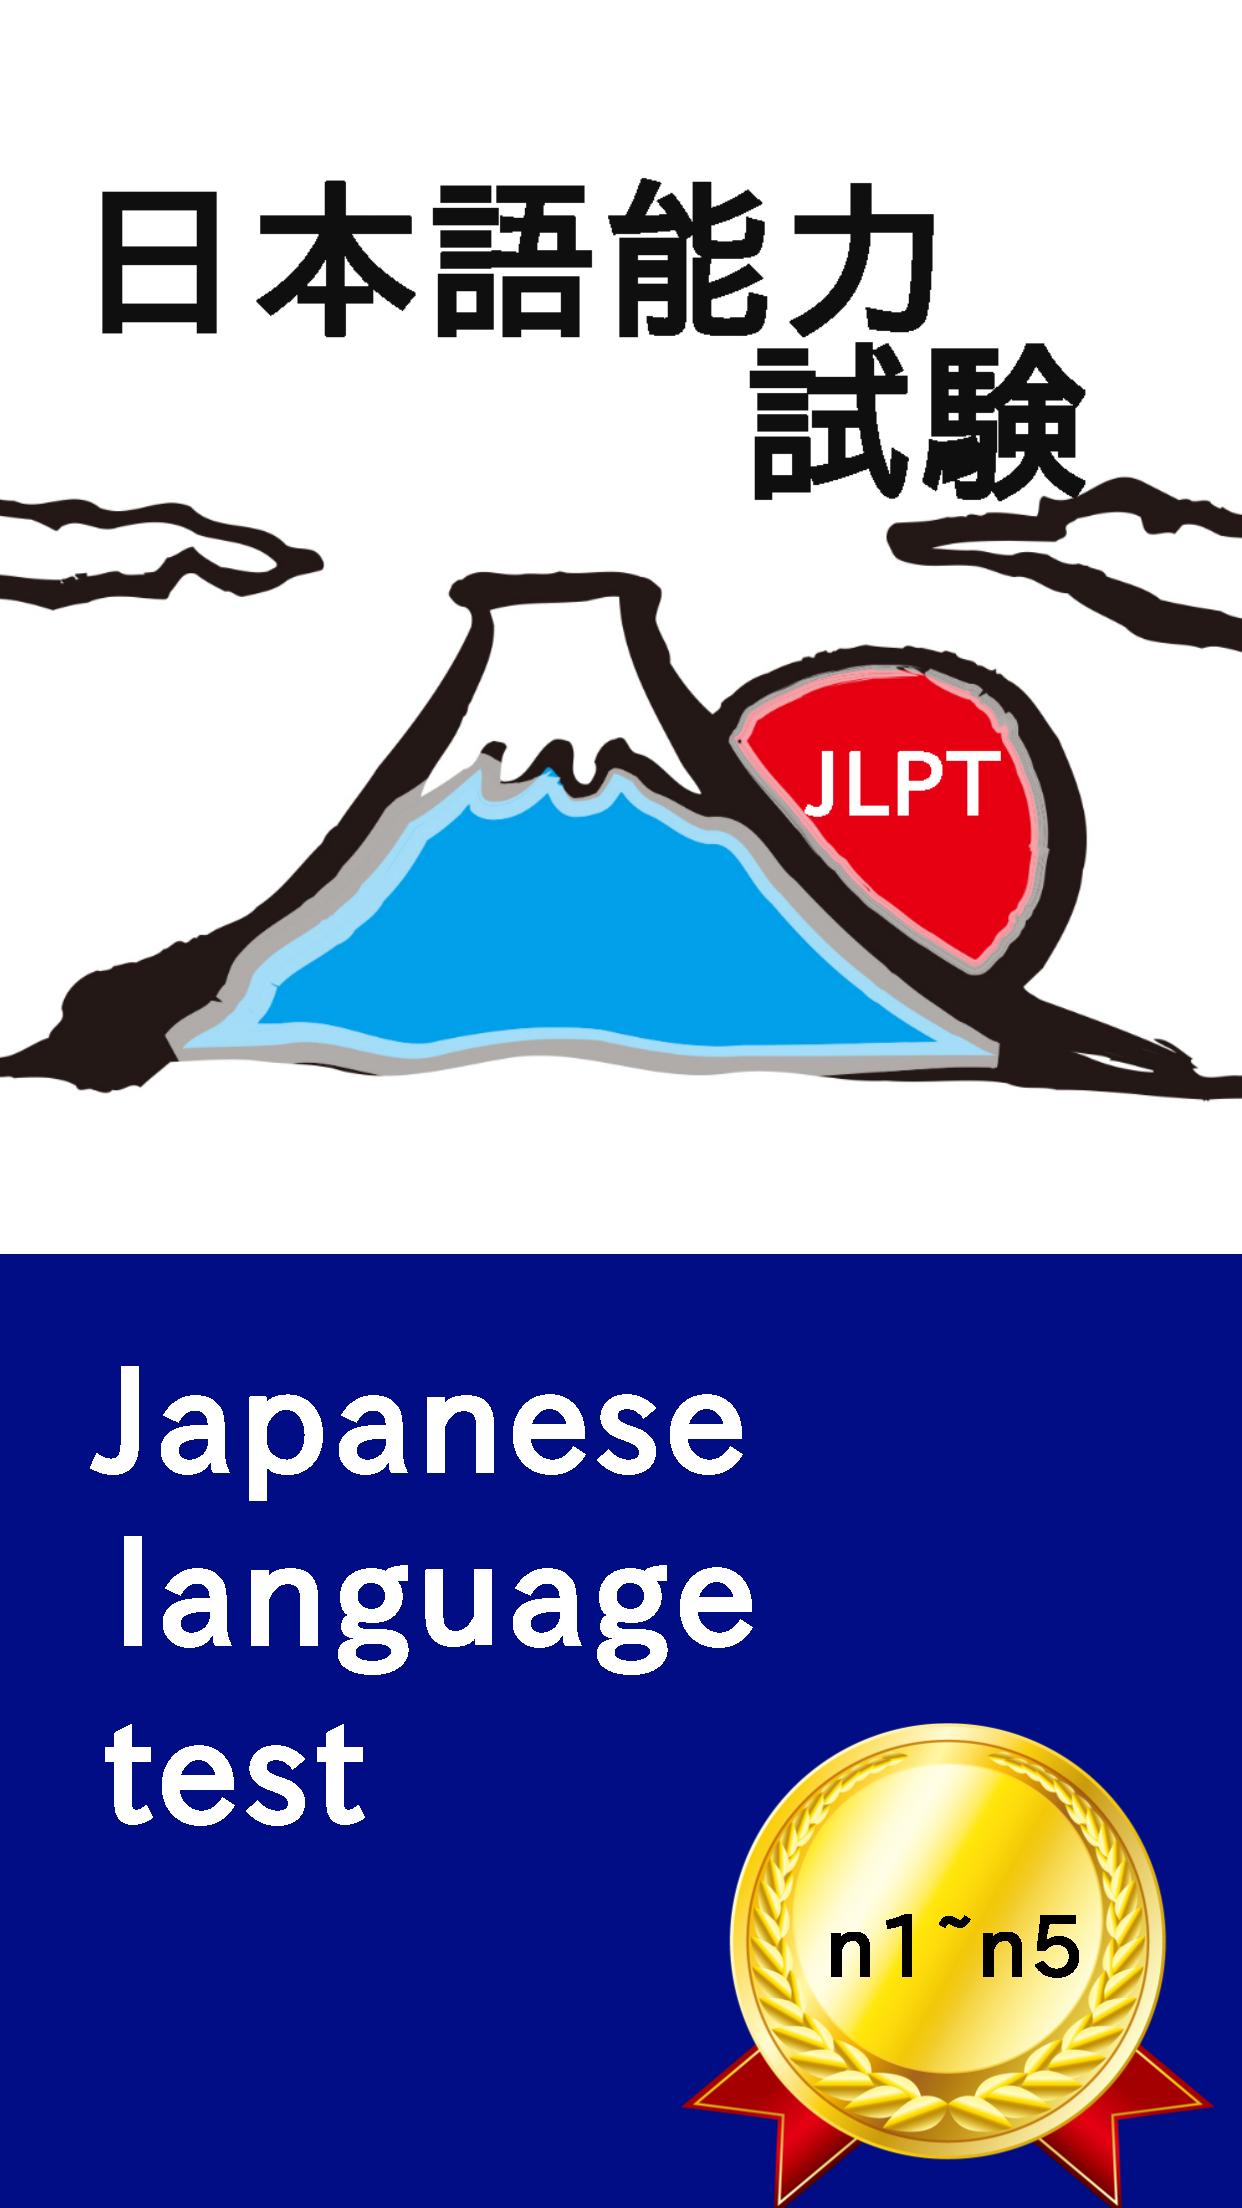 Jplt Test 日本語能力試験 言葉や漢字をたのしく覚えよう For Android Apk Download